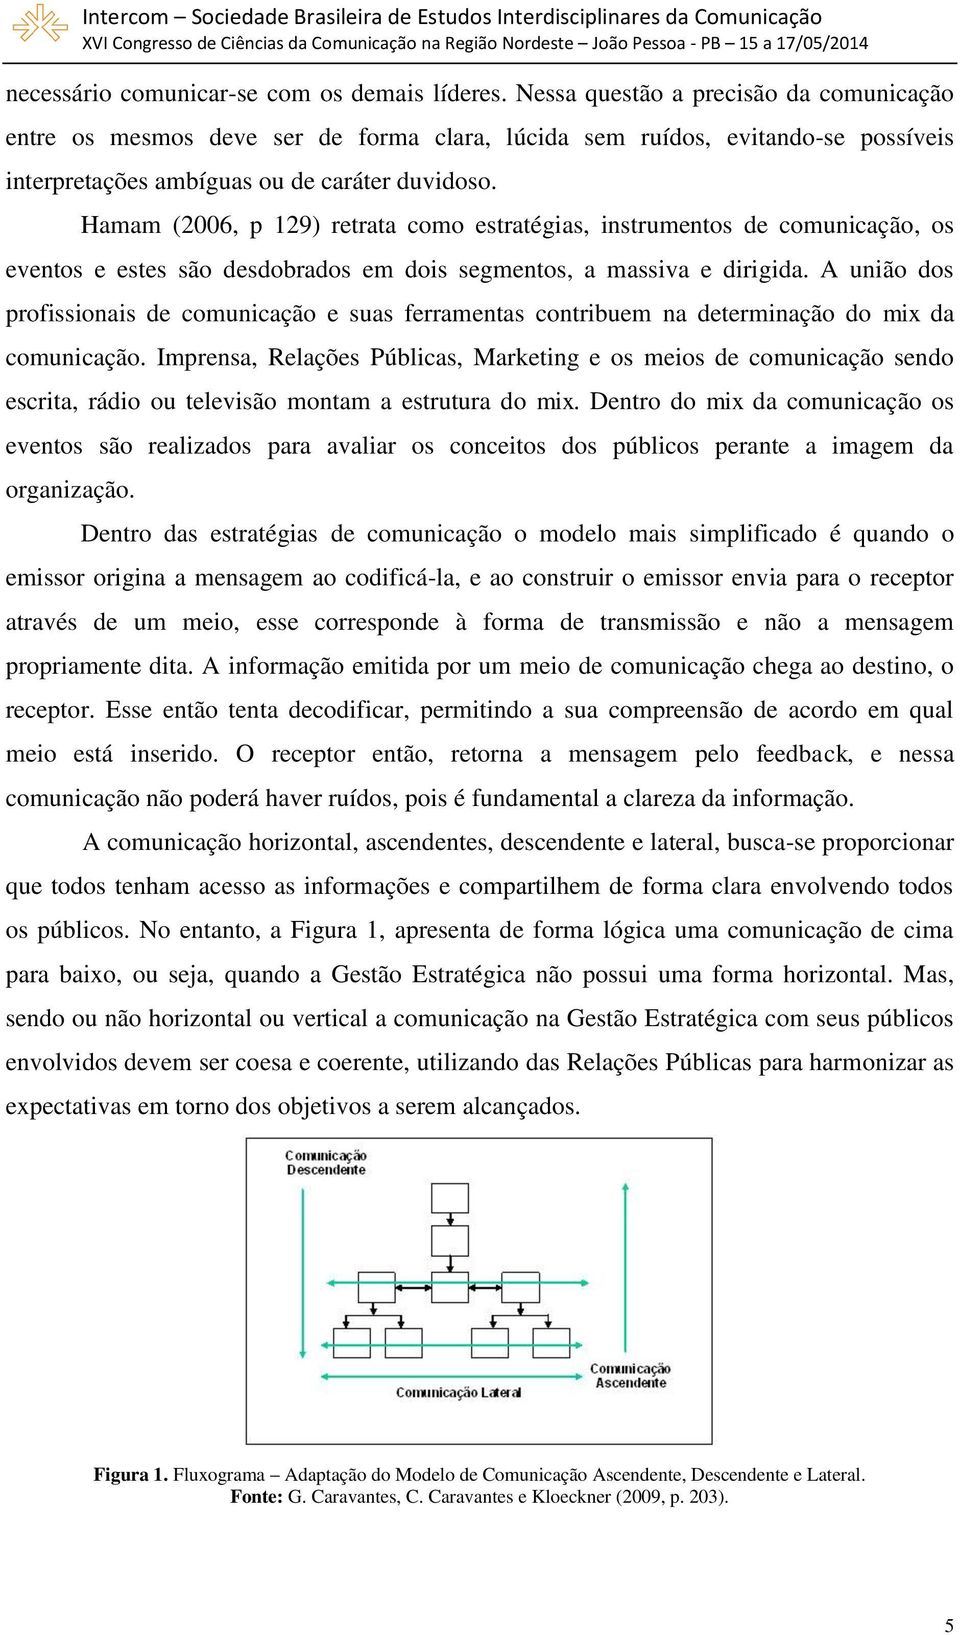 Hamam (2006, p 129) retrata como estratégias, instrumentos de comunicação, os eventos e estes são desdobrados em dois segmentos, a massiva e dirigida.